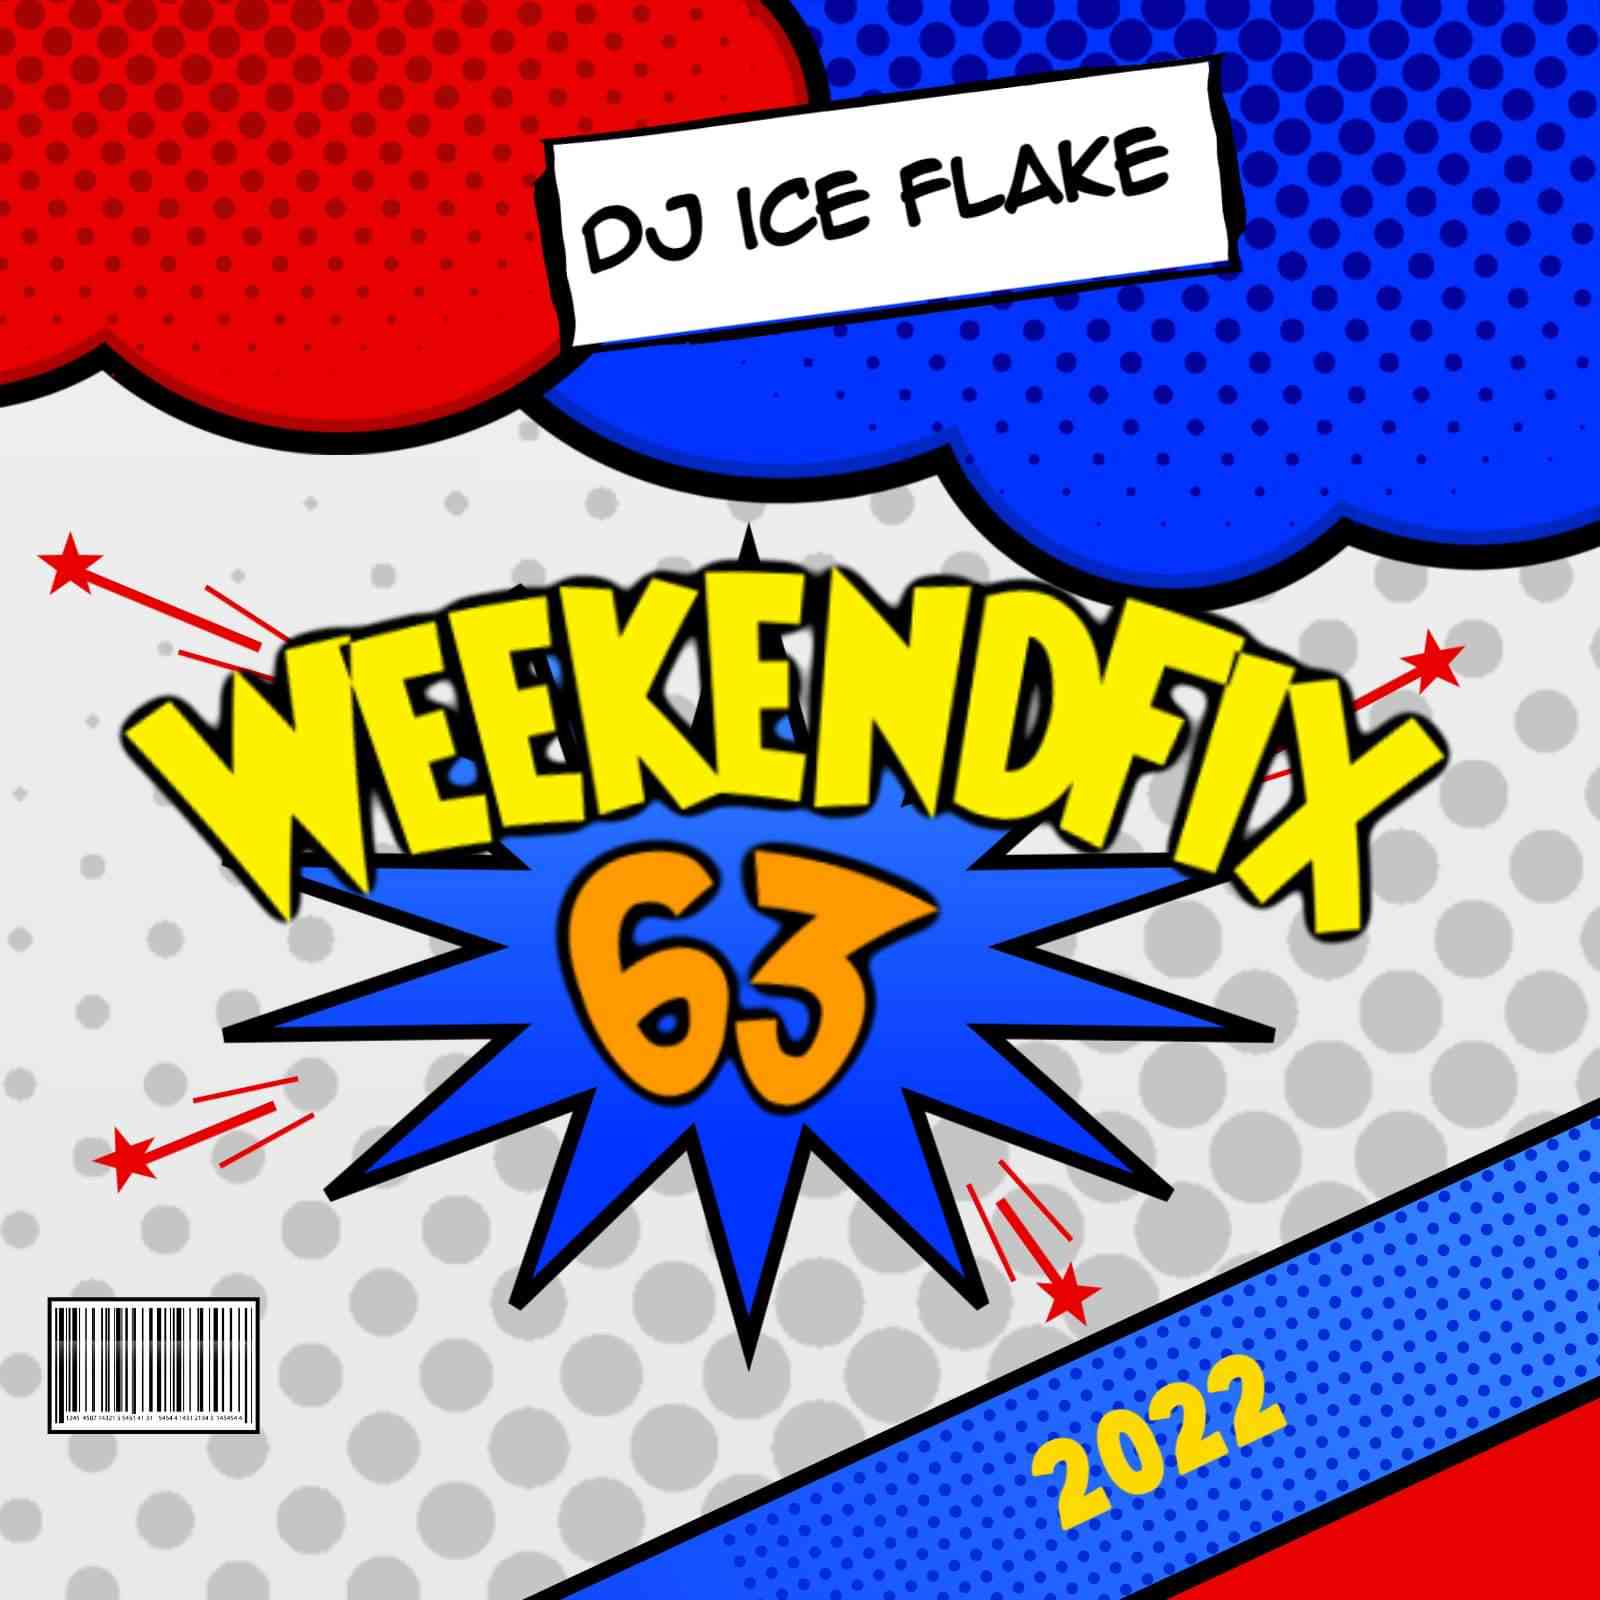 Dj Ice Flake WeekendFix 63 2022 Mix 